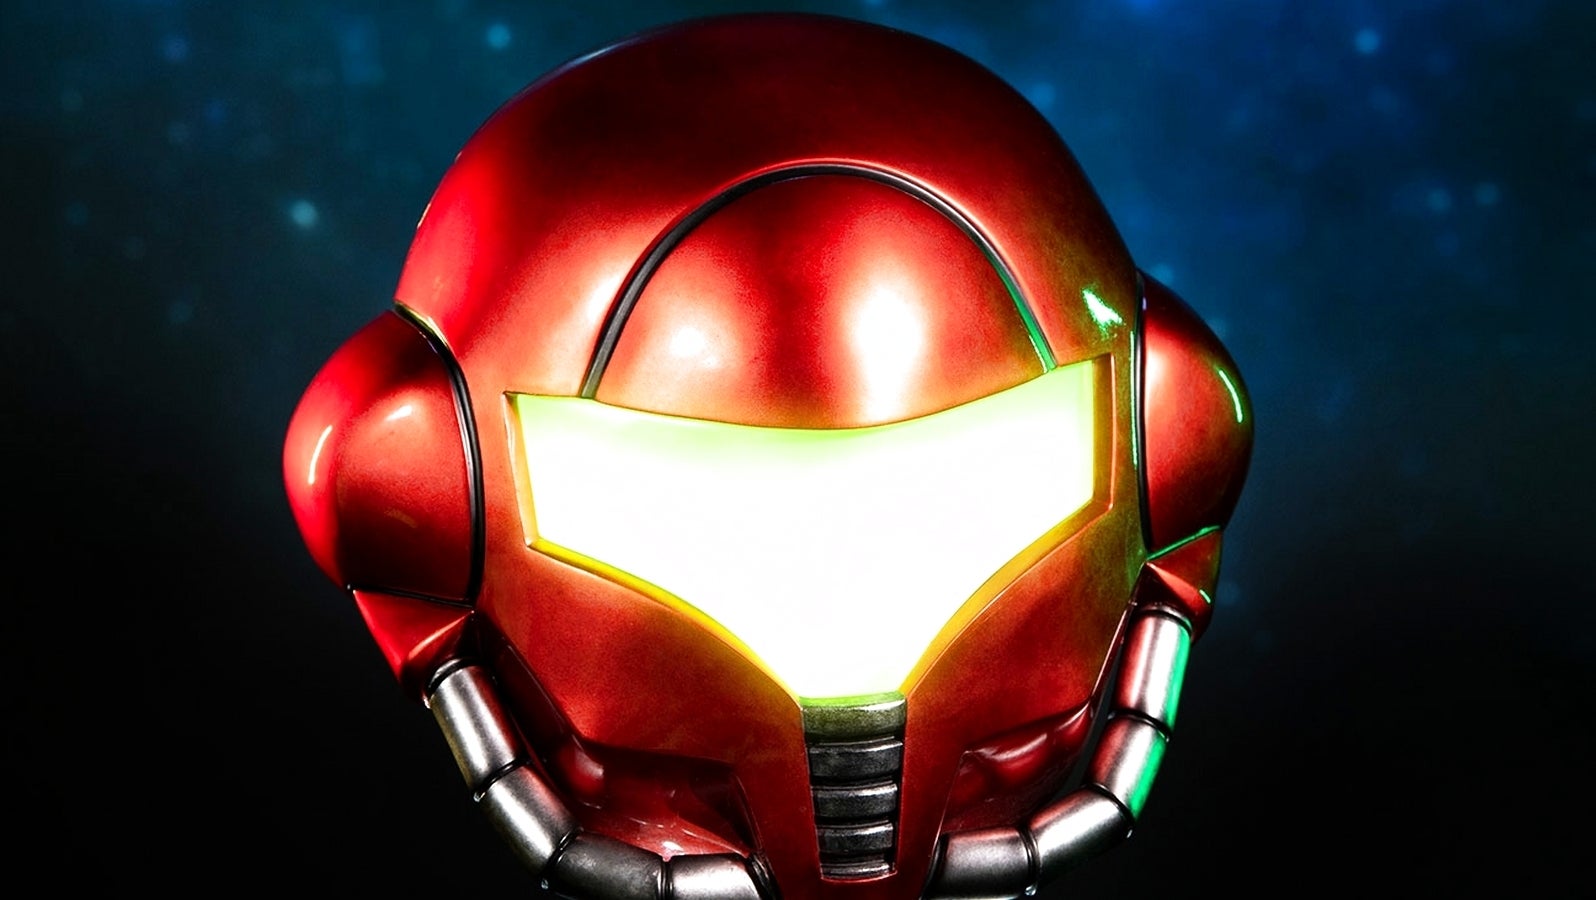 Bilder zu Metroid Prime: Samus Arans Helm bekommt ihr jetzt für eure Sammlung - wird aber nicht günstig!